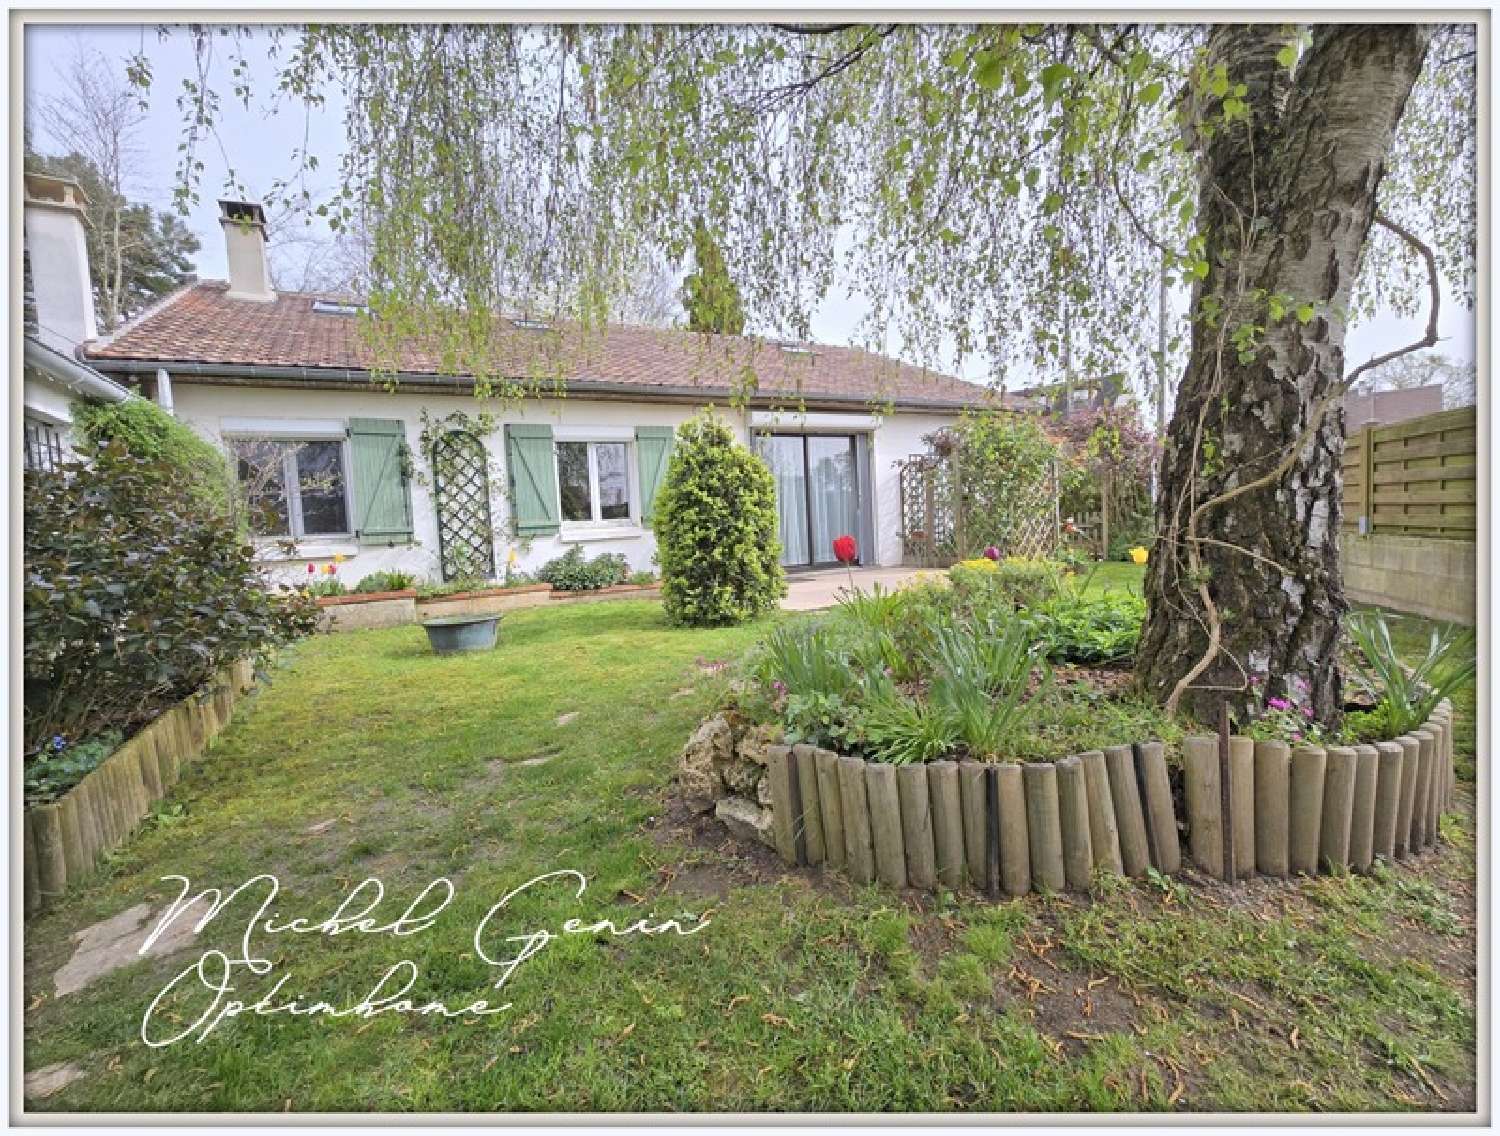  à vendre maison Courdimanche Val-d'Oise 1